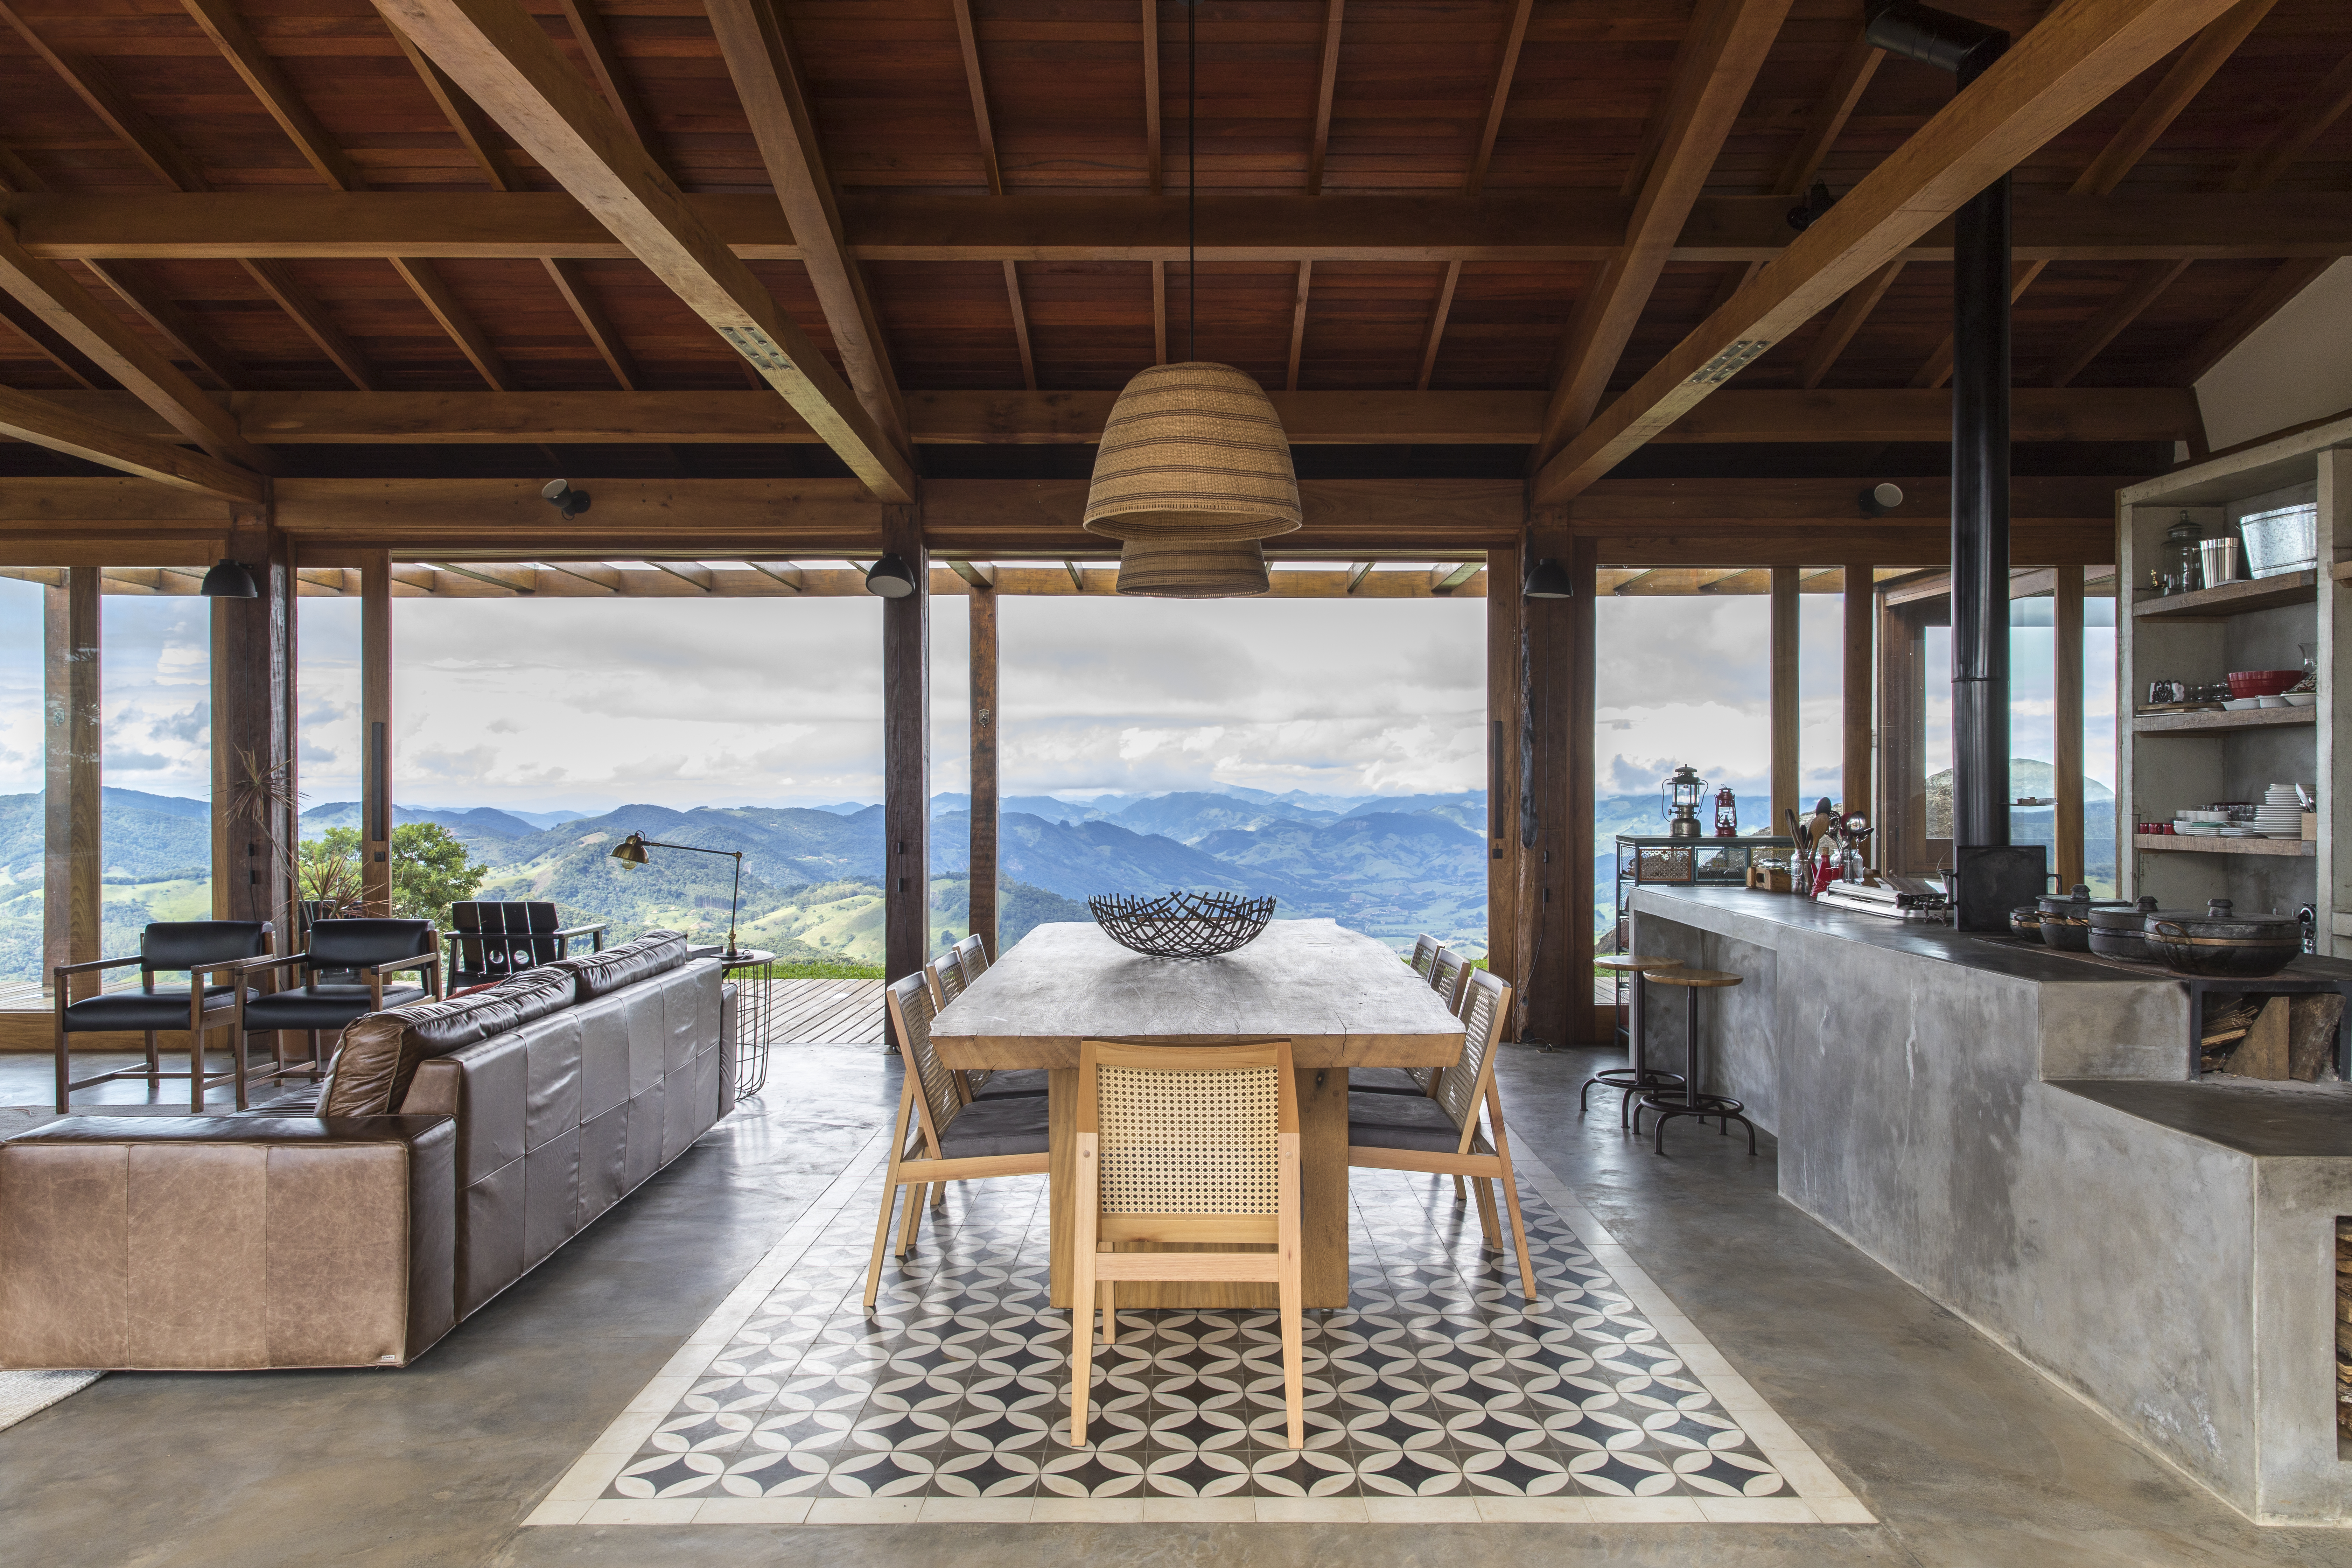 Linda casa na montanha tem lareira e cozinha rústica com fogão à lenha. Projeto de Sabella Arquitetura. Na foto, cozinha integrada, tapete de ladrilhos.